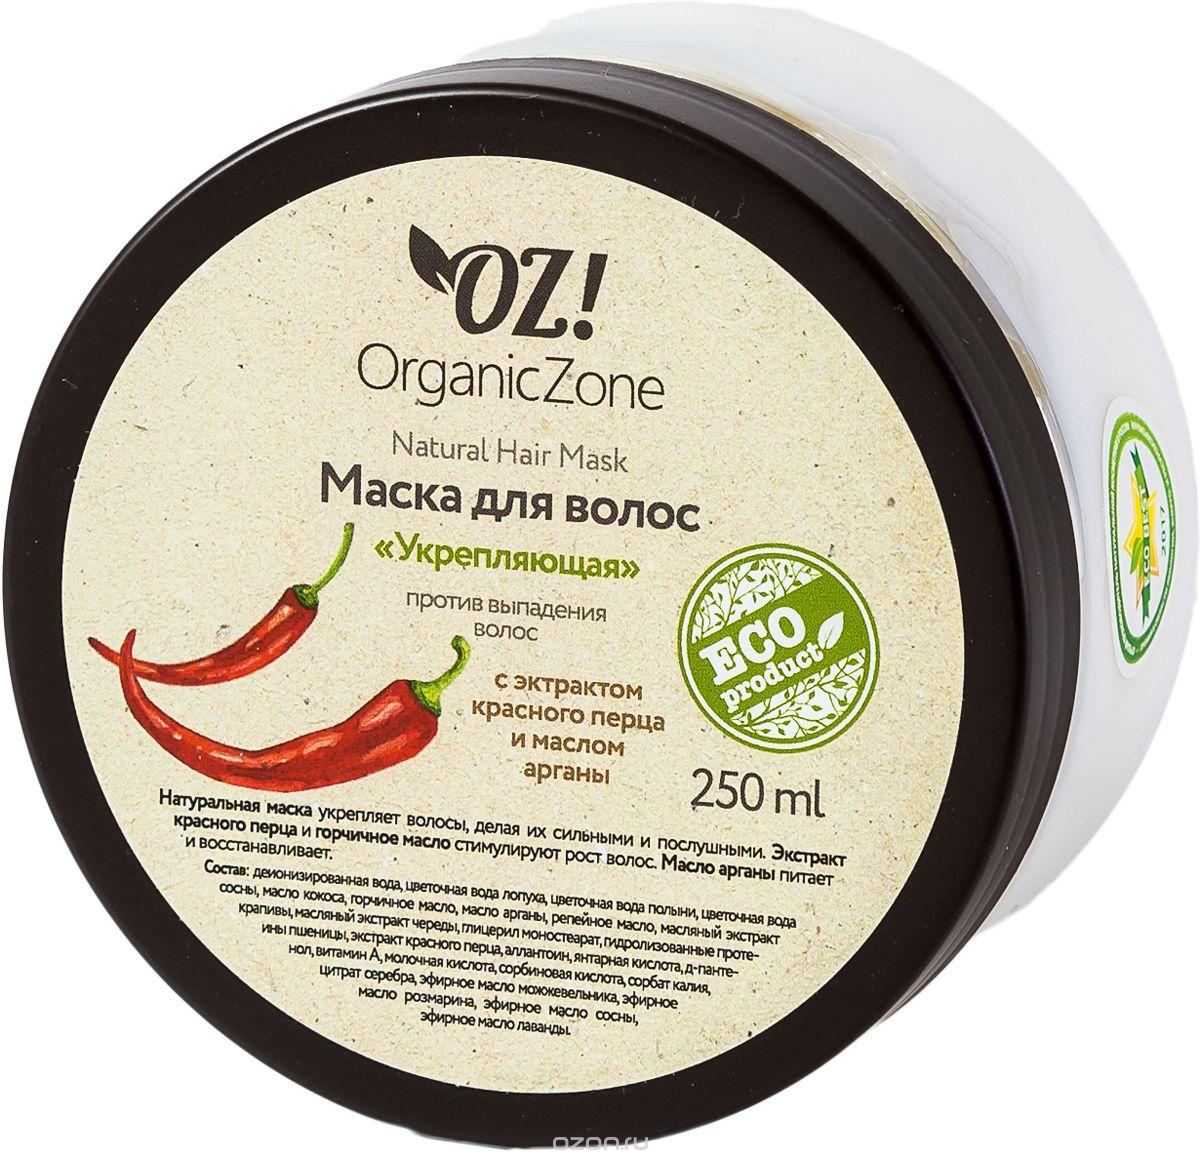 Маска против выпадения волос "Укрепляющая", 250 мл. (Organic Zone)